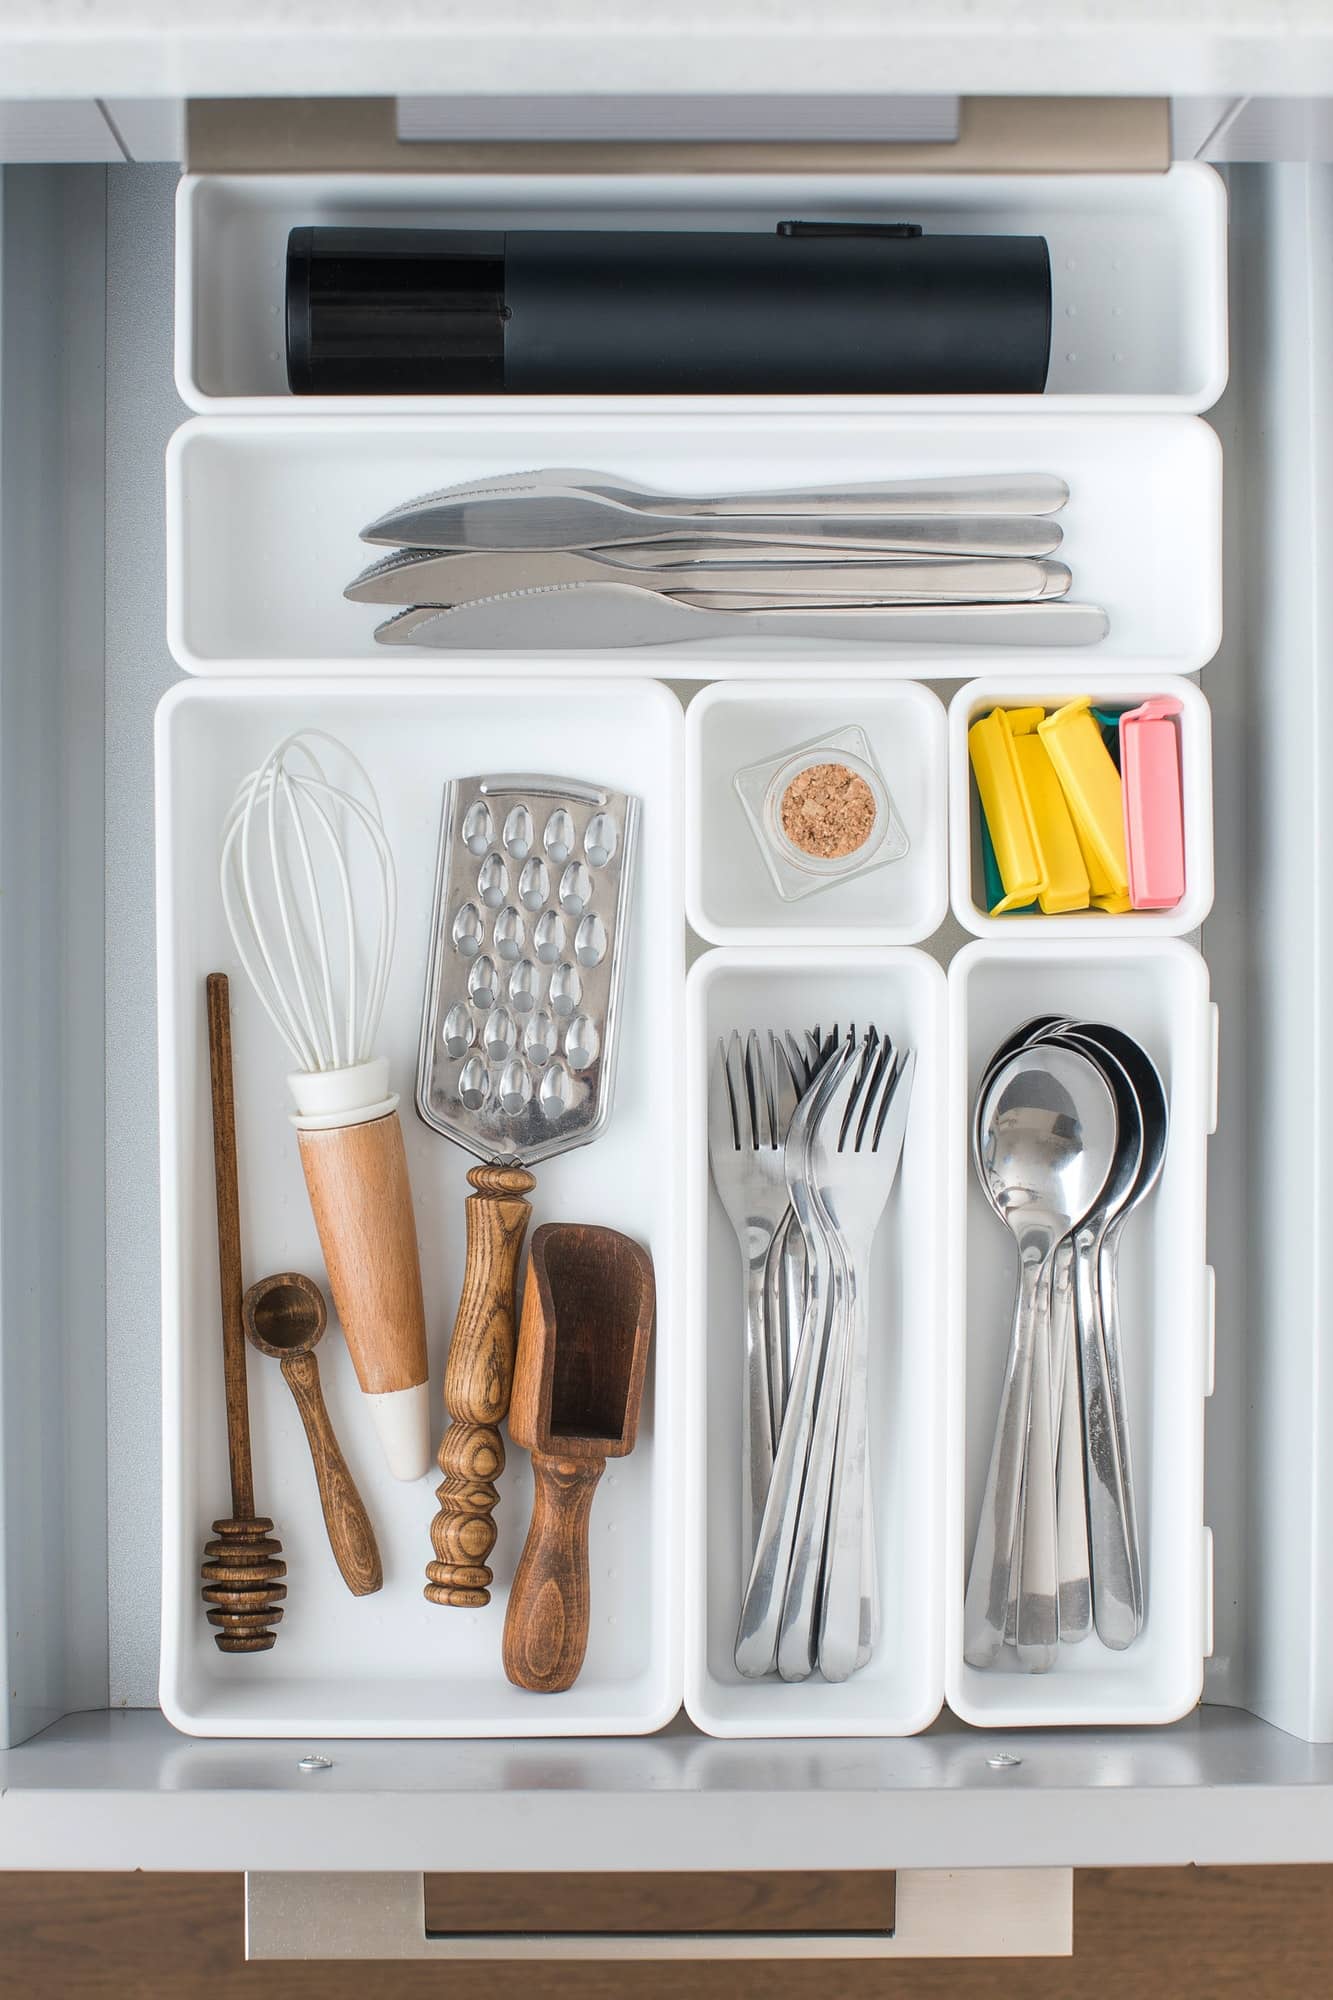 Rangement tiroir cuisine: les astuces pour maximiser votre espace